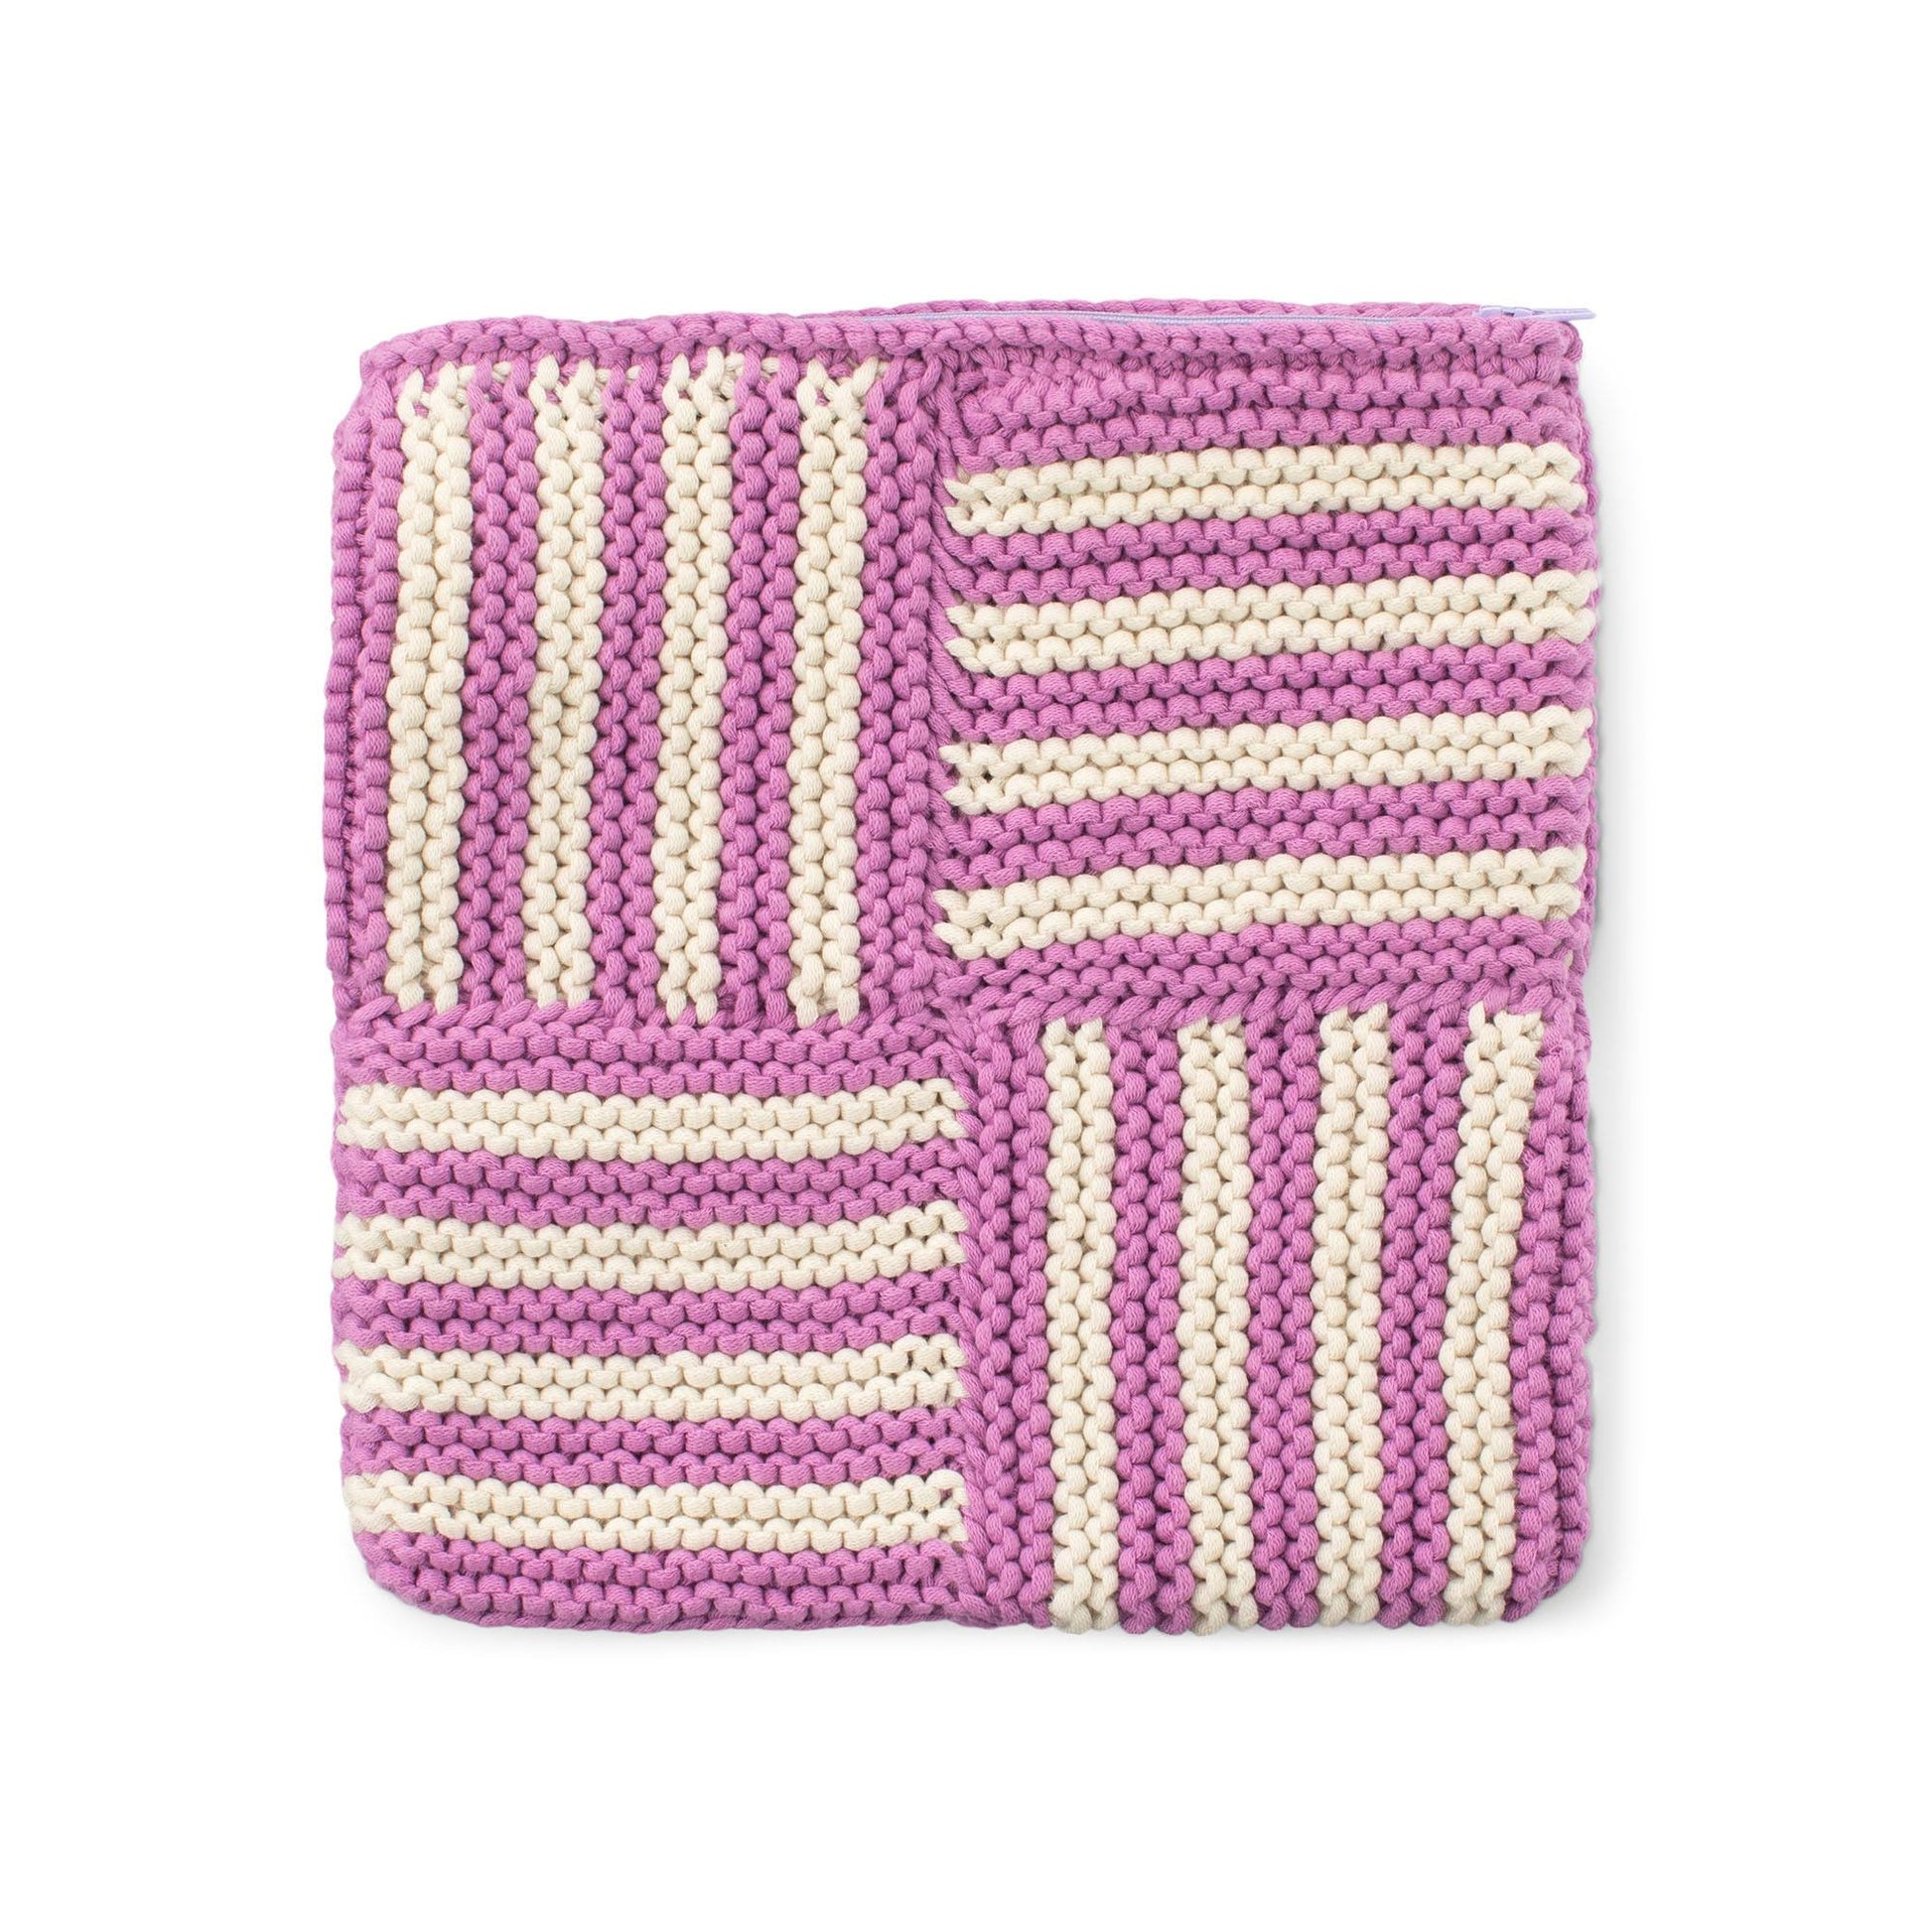 Free Bernat Knit Take a Turn Zippered Pouch Pattern